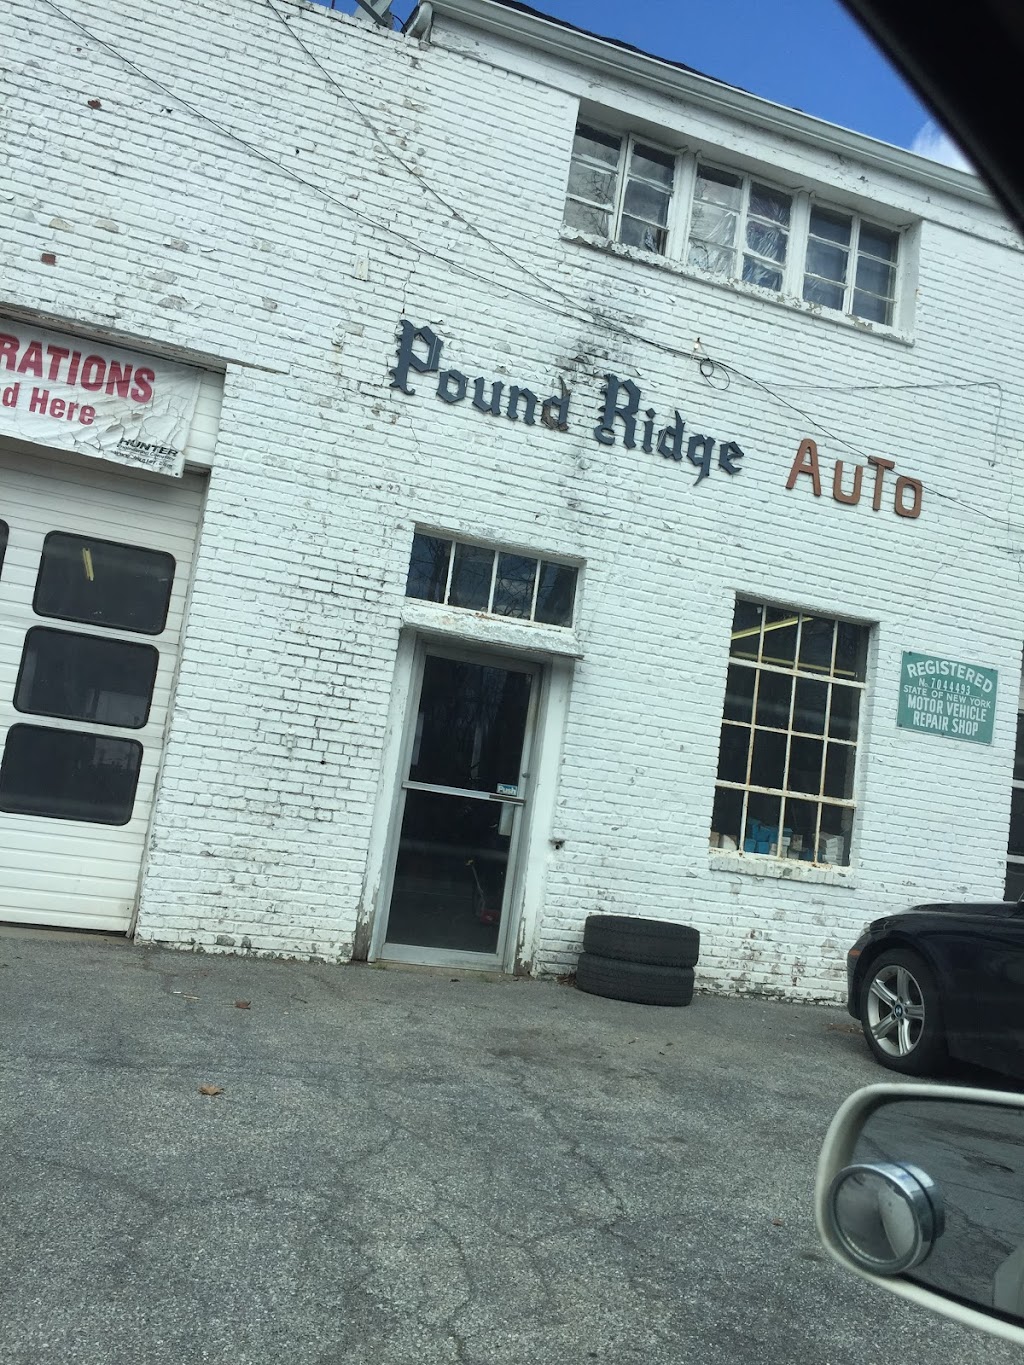 Pound Ridge Auto Repair | 15 Pound Ridge Rd, Pound Ridge, NY 10576 | Phone: (914) 764-5707